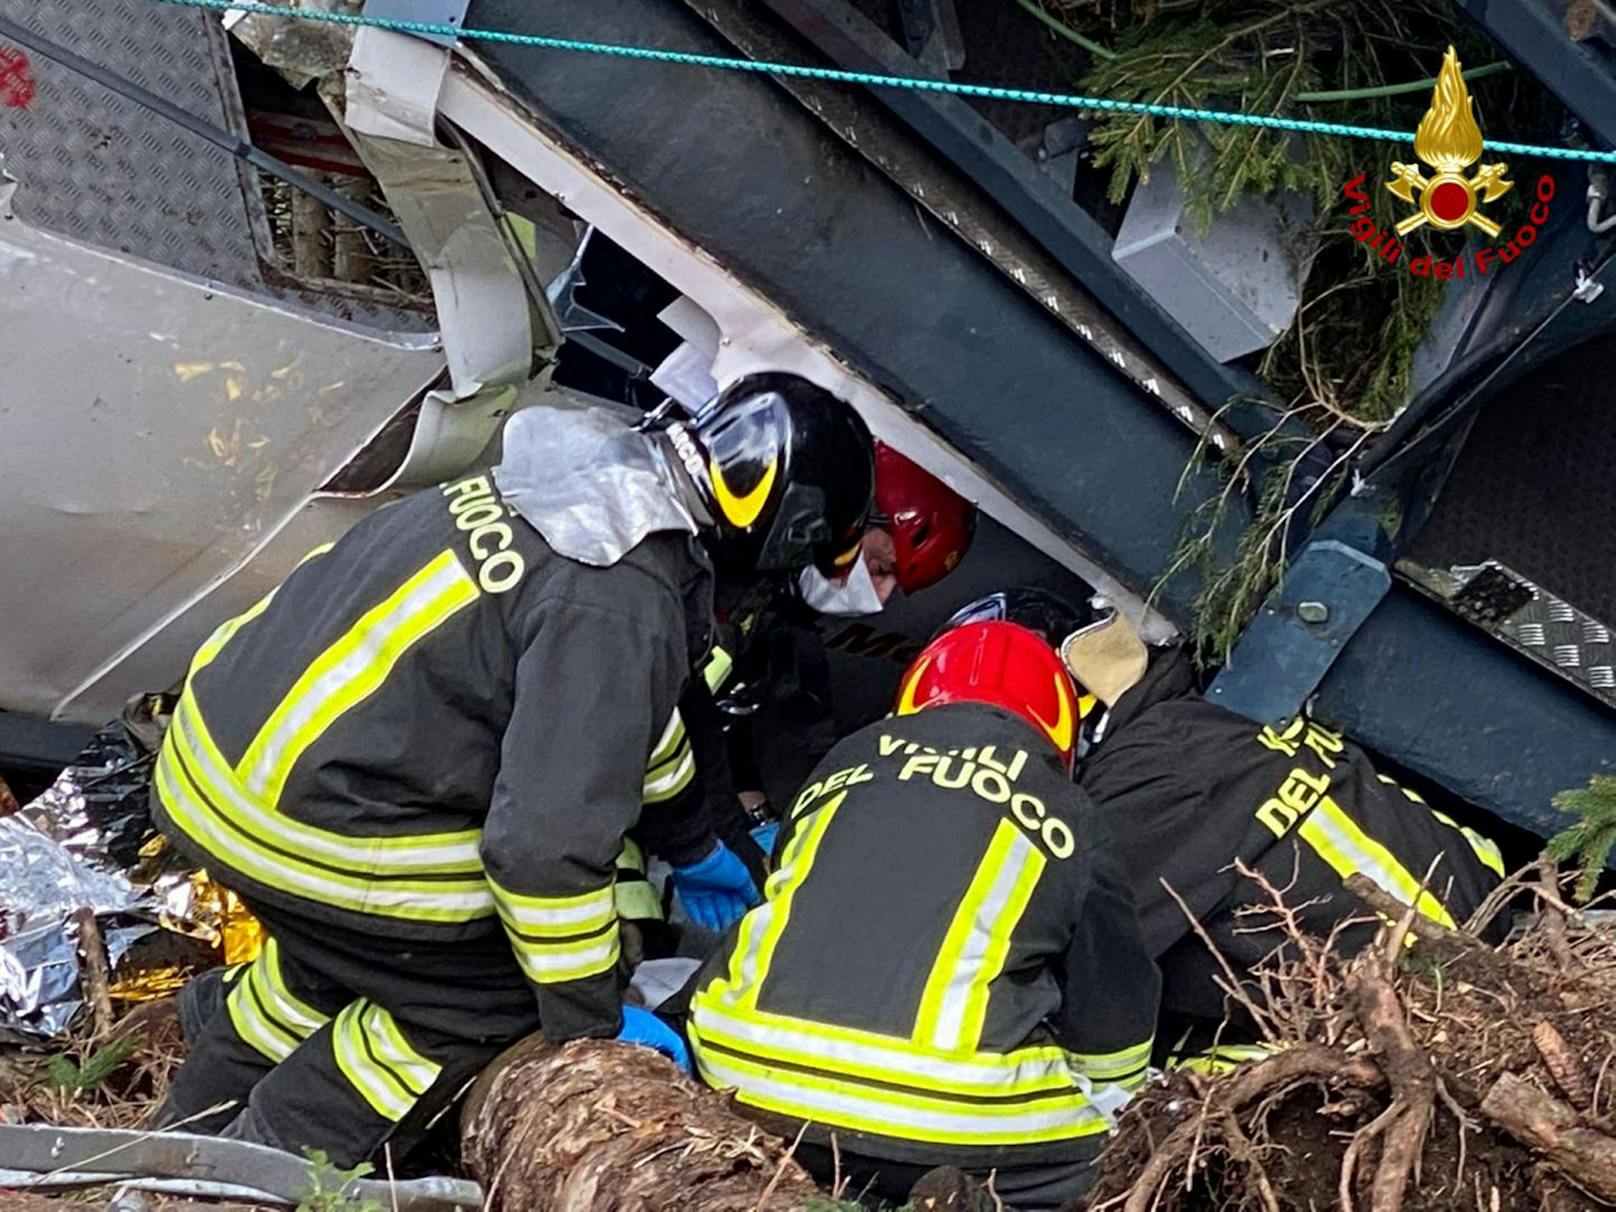 Beim Absturz einer Seilbahn-Kabine im italienischen Piemont sind am 23. Mai 2021 mindestens 13 Menschen ums Leben gekommen. Zwei Kinder konnten schwerst verletzt geborgen und in ein Spital geflogen werden.